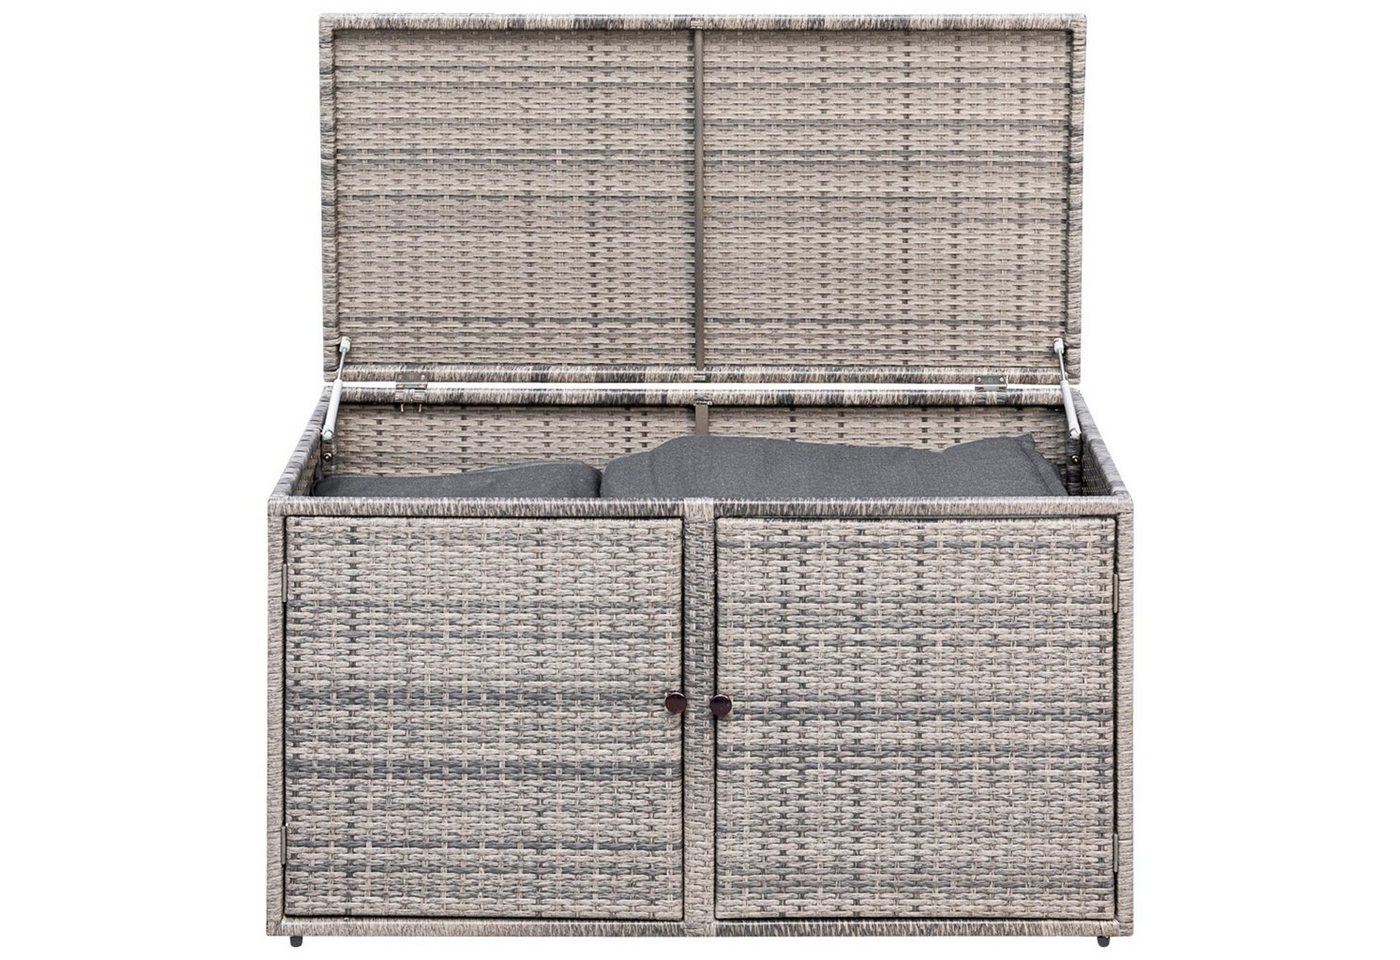 MERXX Kissenbox RIVA (1 St), Große Funktions-Auflagenbox, Maße 120x60x64cm. Die Truhe besteht aus einem stabilen Metallgestell mit Polyrattanbespannung, Farbe grau von MERXX